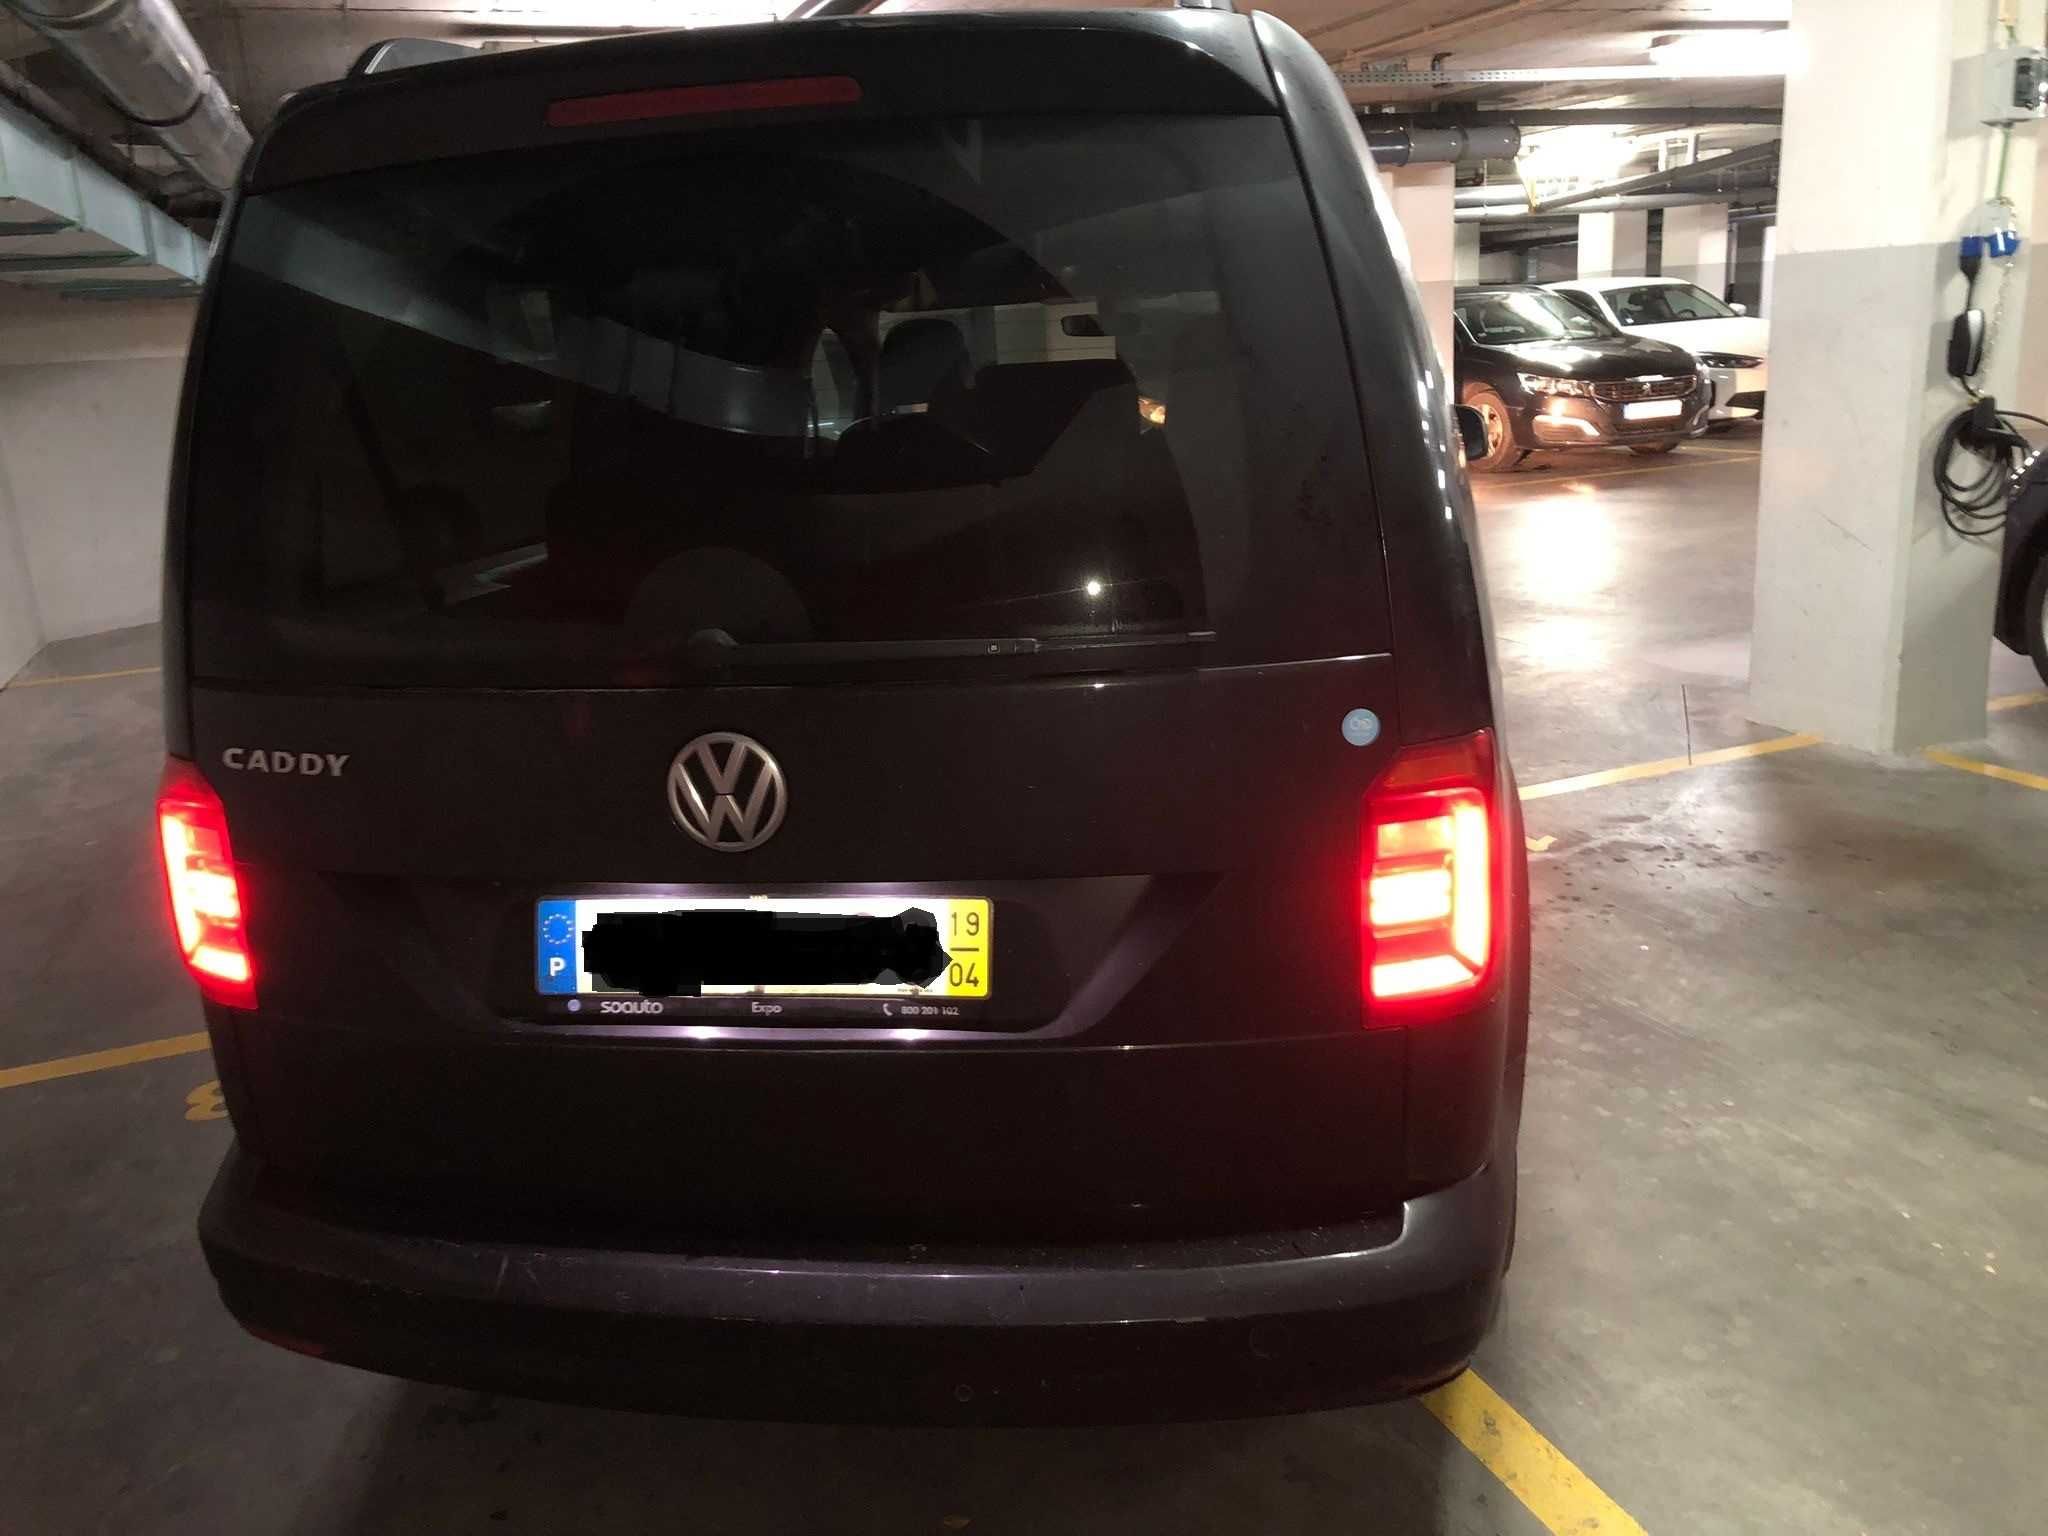 VW Caddy XL 2019 7 Lugares Bom estado geral